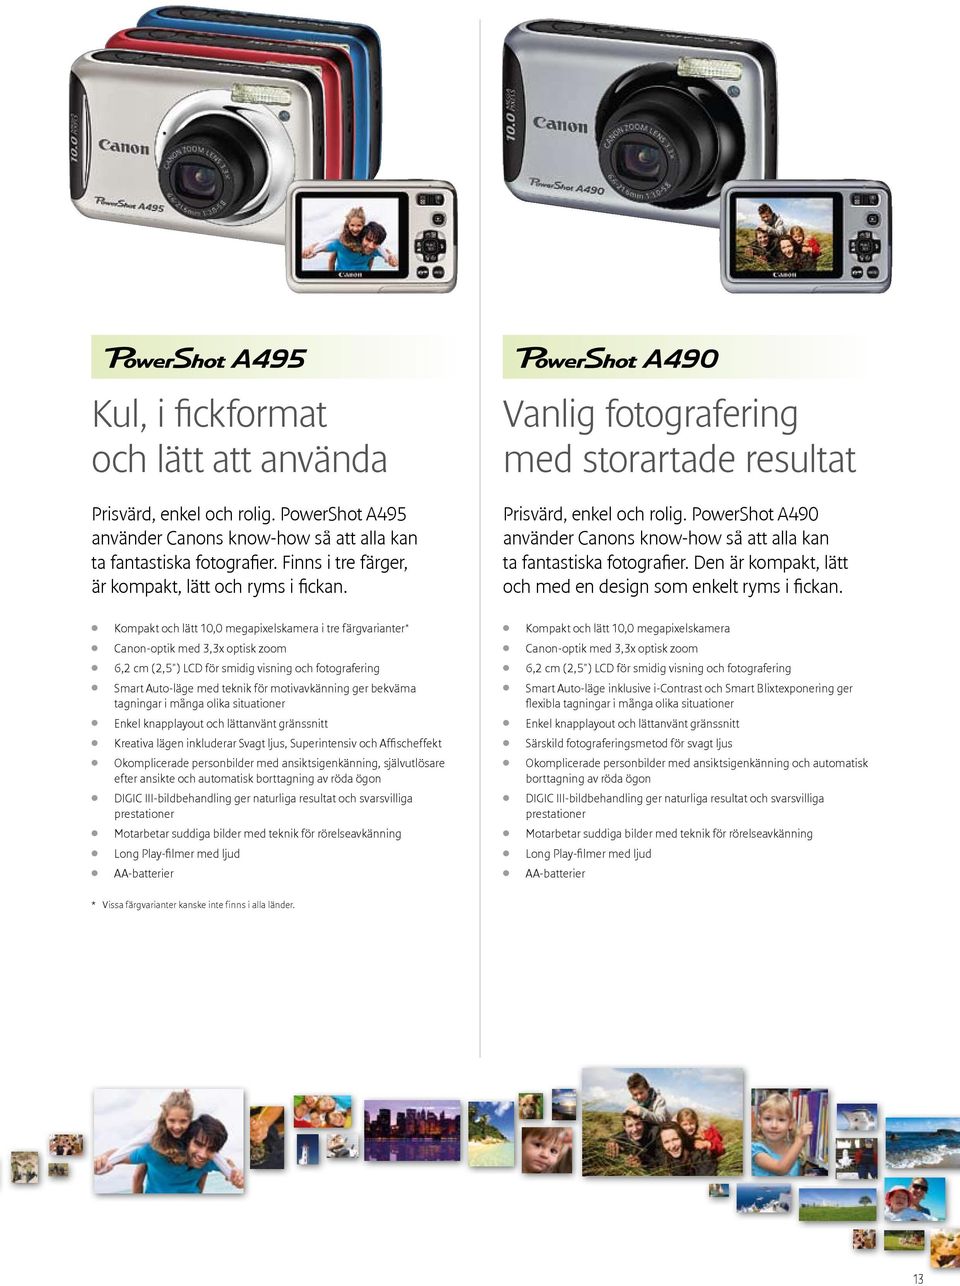 PowerShot A490 använder Canons know-how så att alla kan ta fantastiska fotografier. Den är kompakt, lätt och med en design som enkelt ryms i fickan.